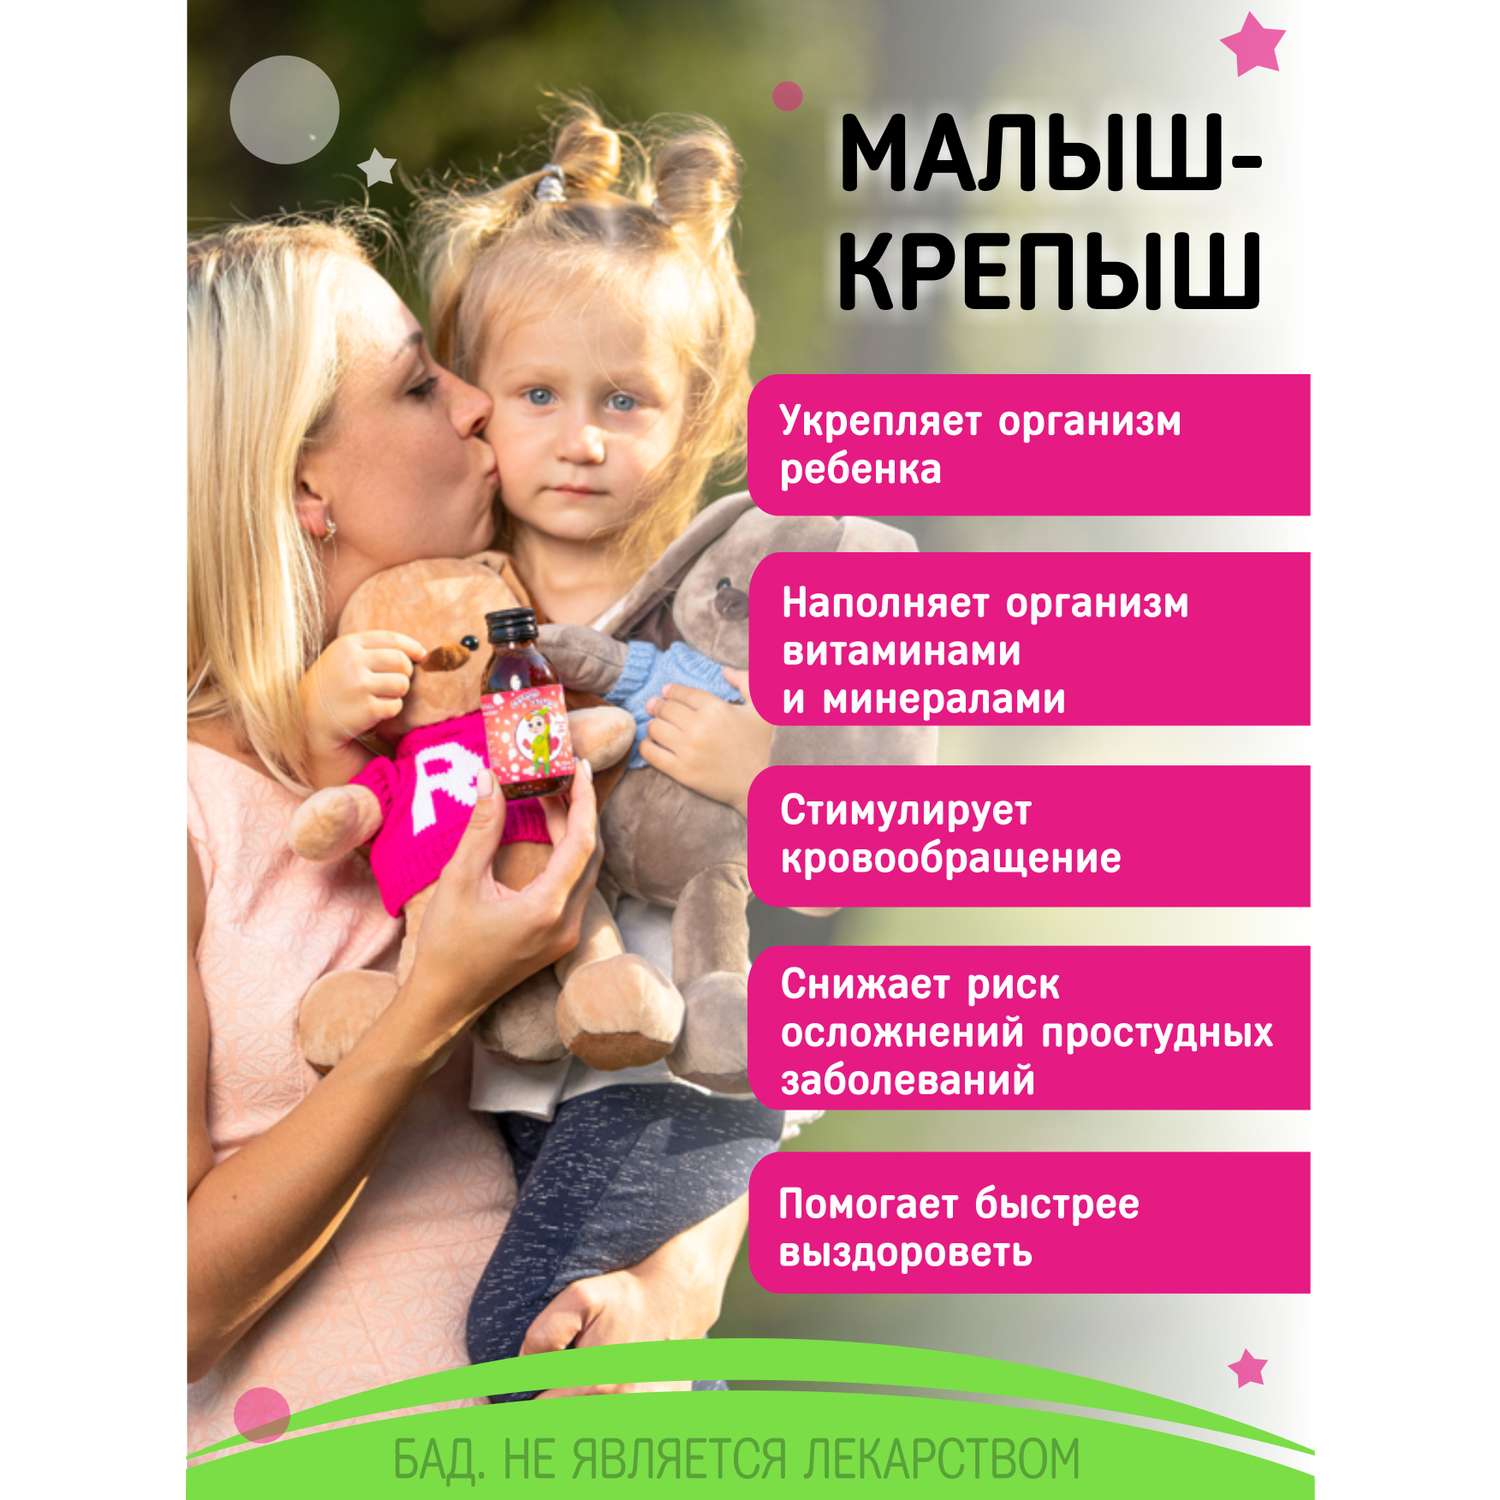 Детский сироп Малыш-крепыш Алфит Плюс ООО для иммунитета детей с 3-х лет - фото 4